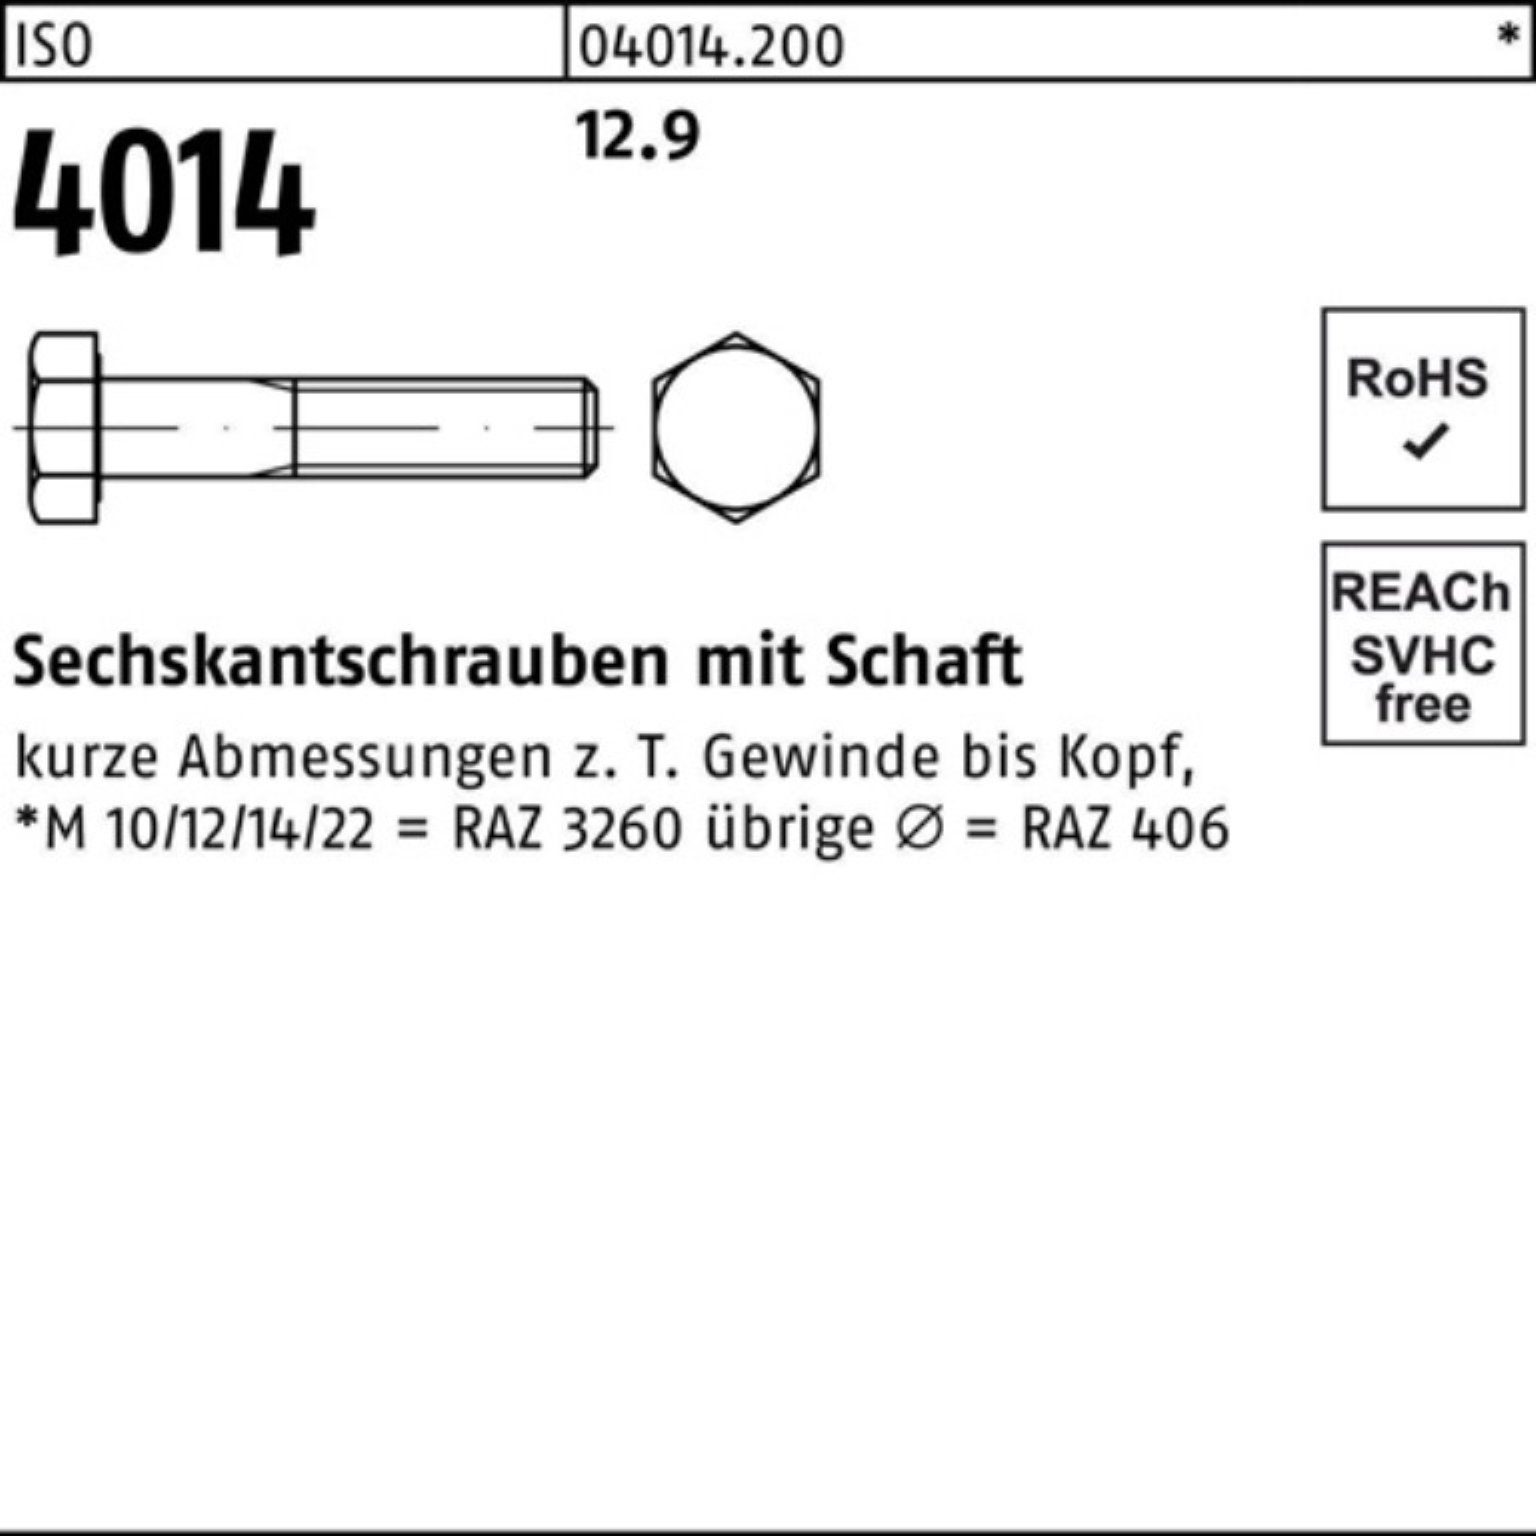 Bufab Sechskantschraube 100er Pack Sechskantschraube Stück I ISO Schaft 12.9 120 50 M12x 4014